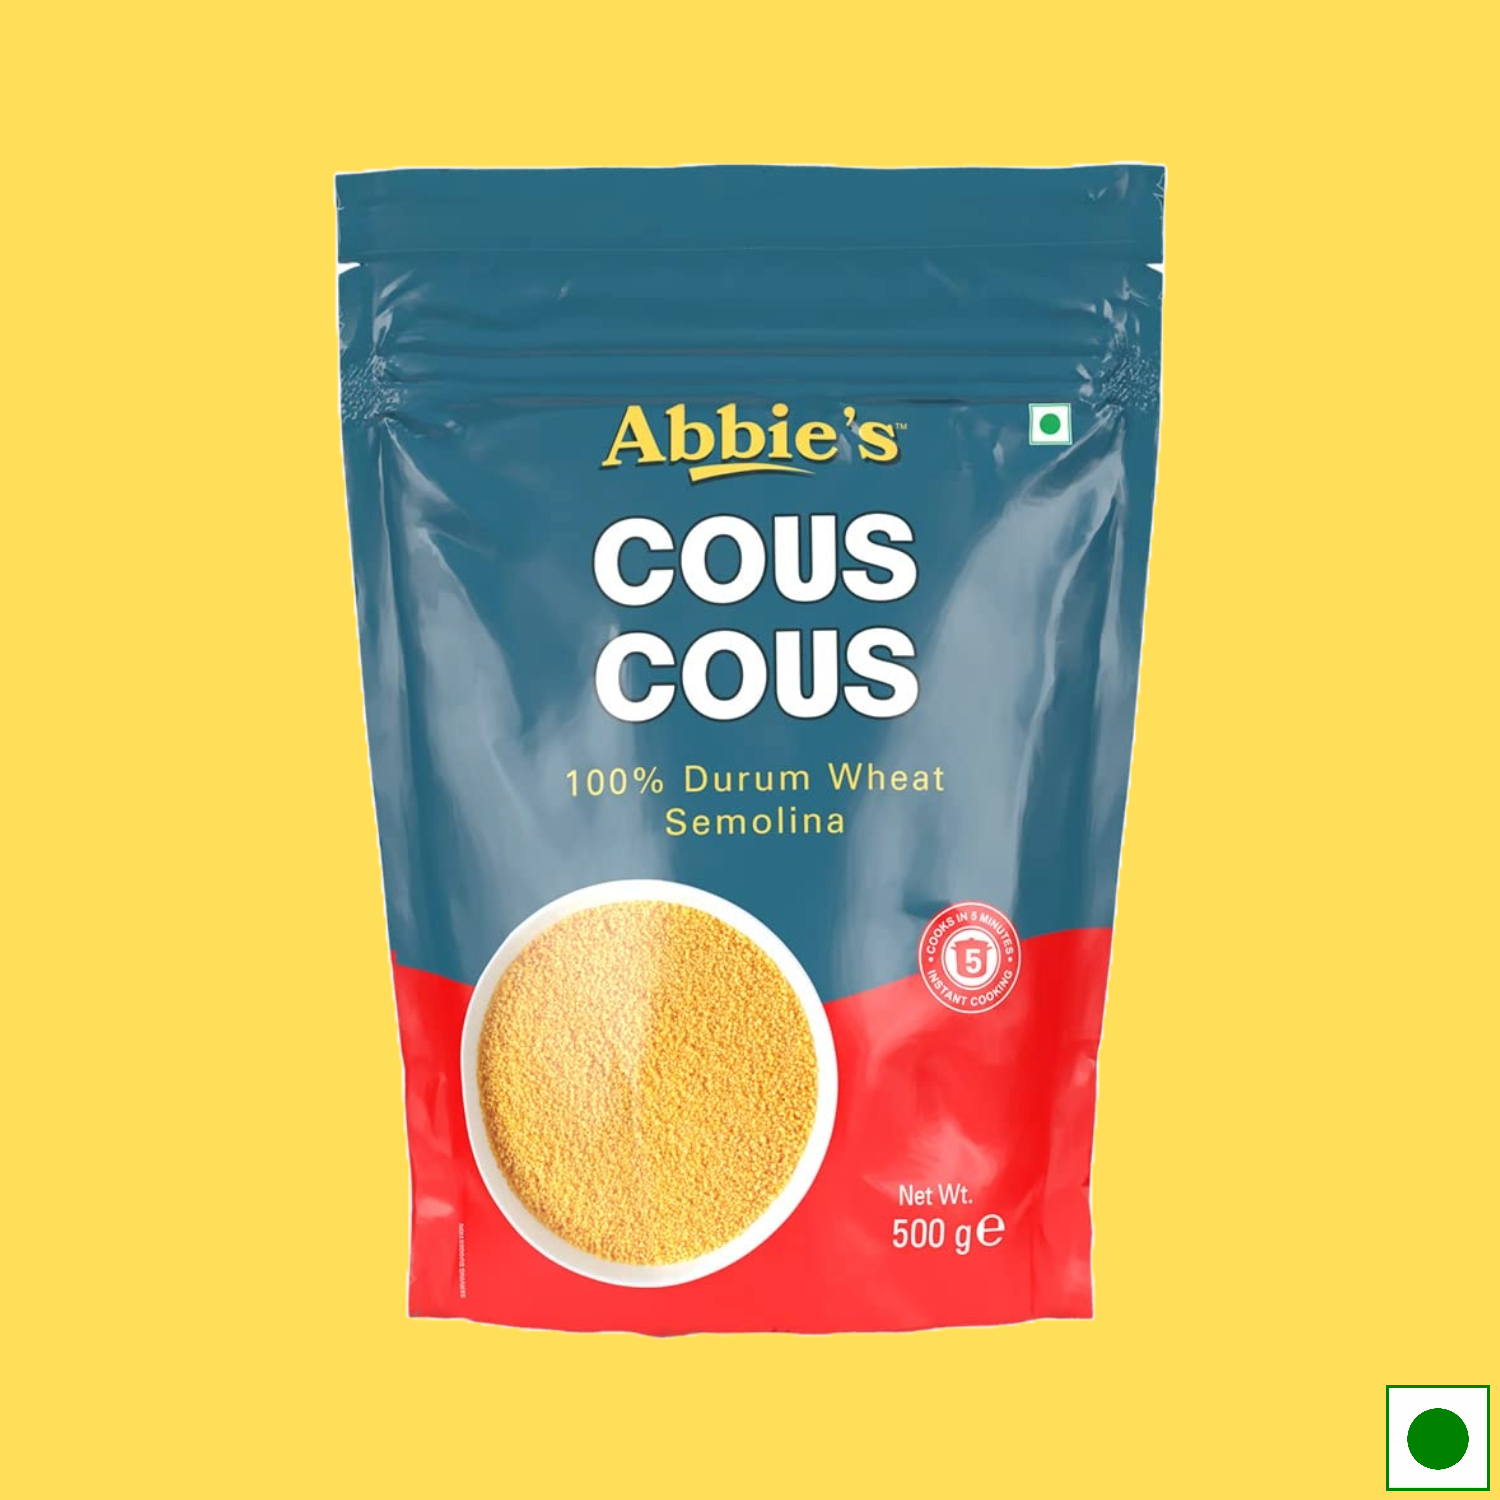 Abbie's Cous Cous 100% Durum Wheat Semolina, 500g (Imported)